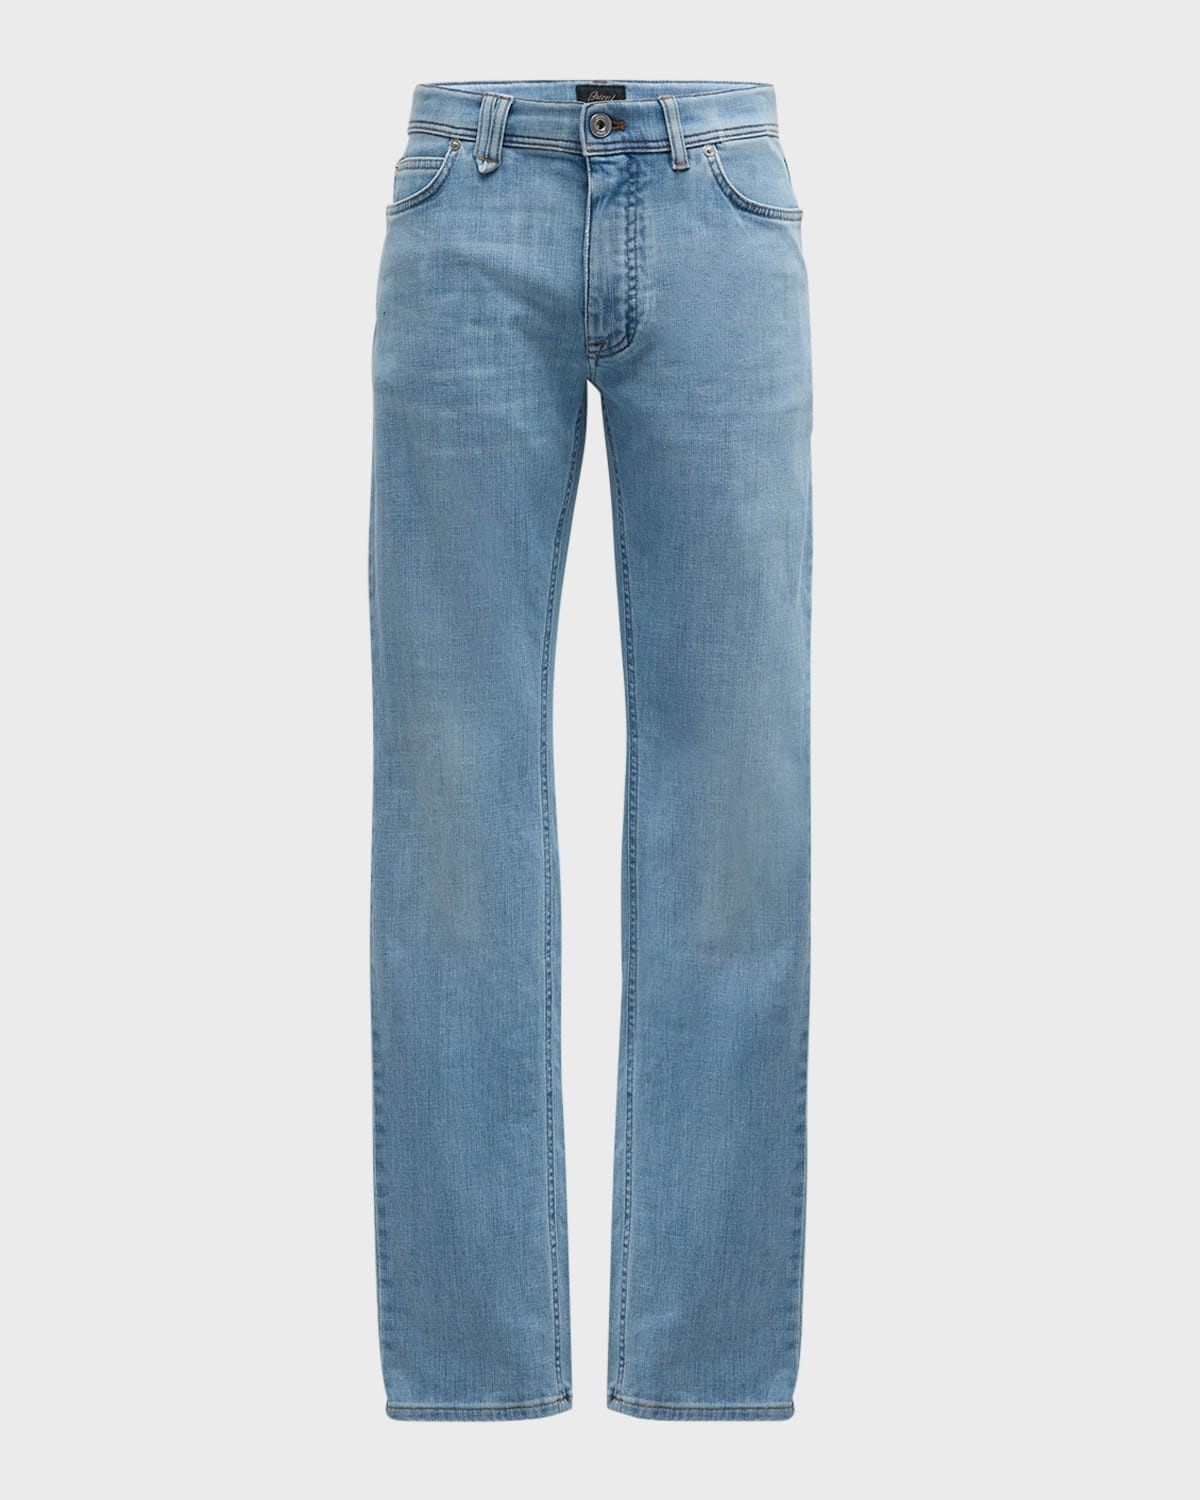 Men's Slim-Fit Light Wash Denim Jeans - 1